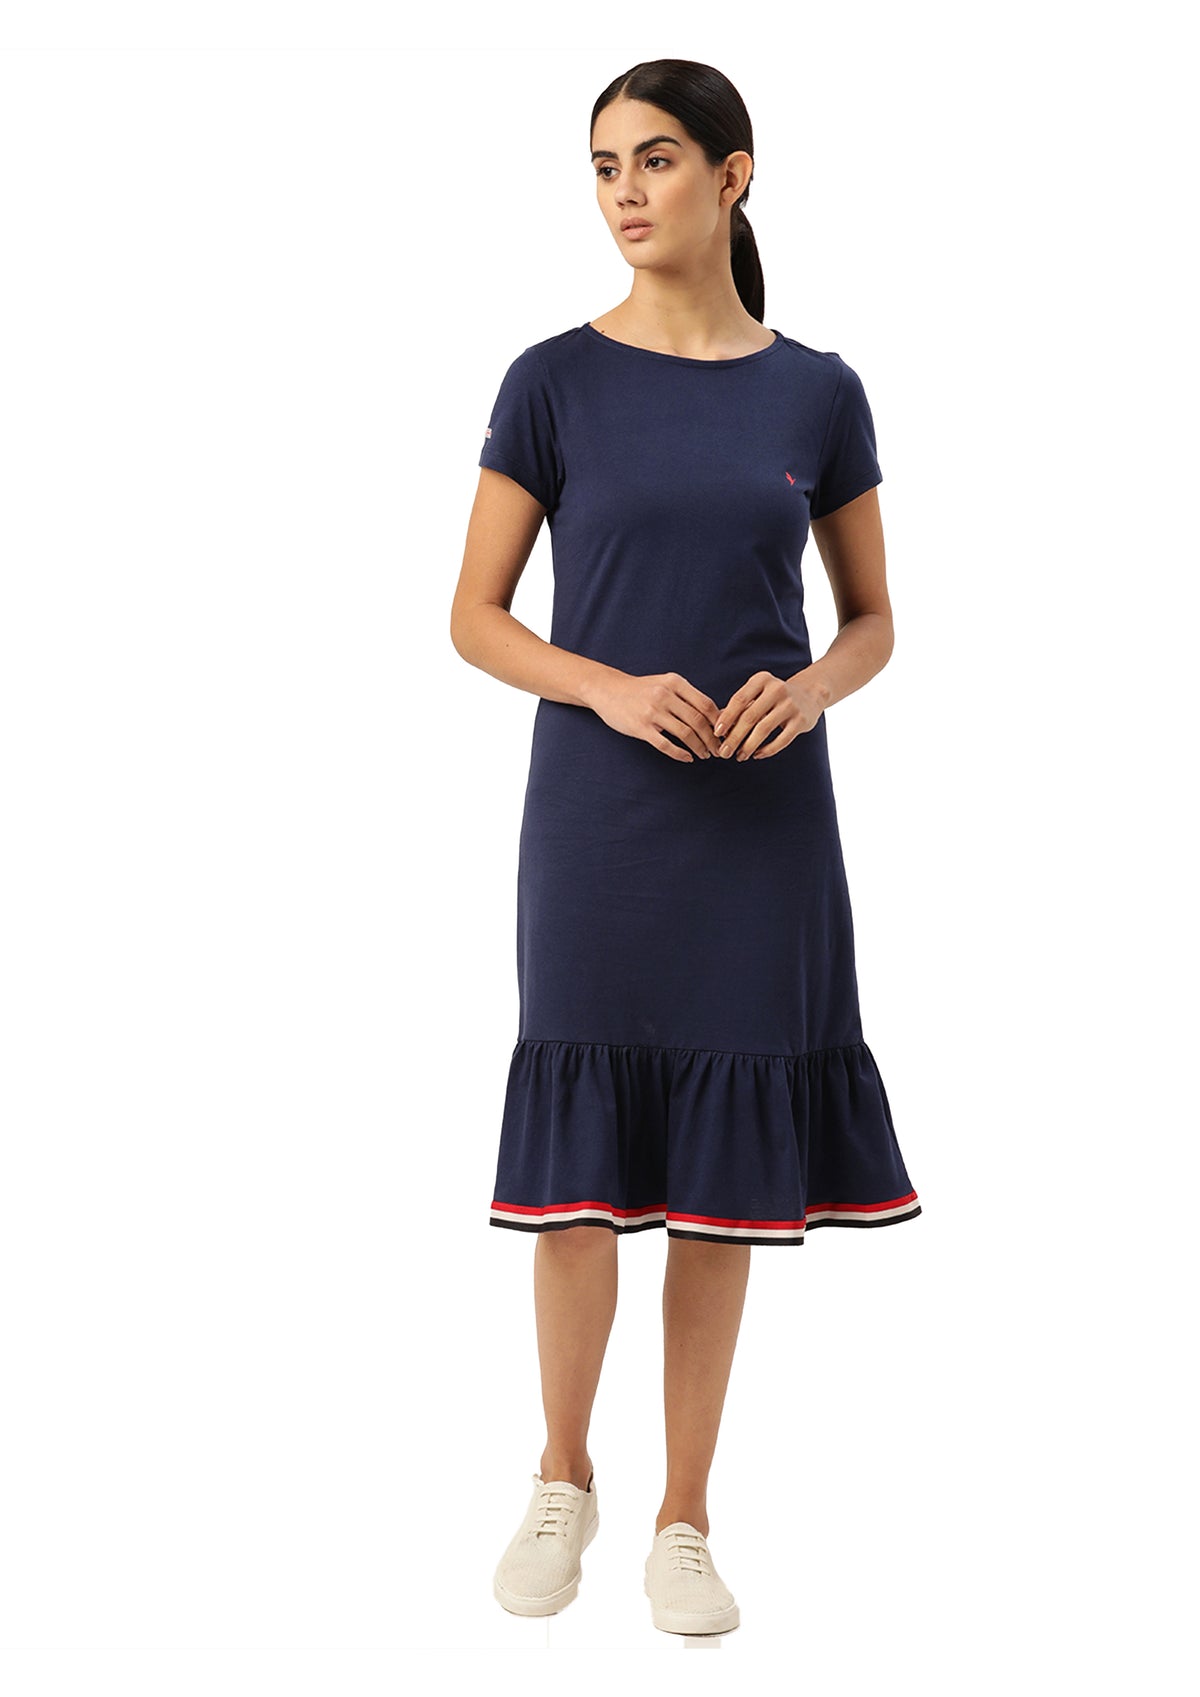 Premium Cotton Lycra Smart Fit Dress For Women